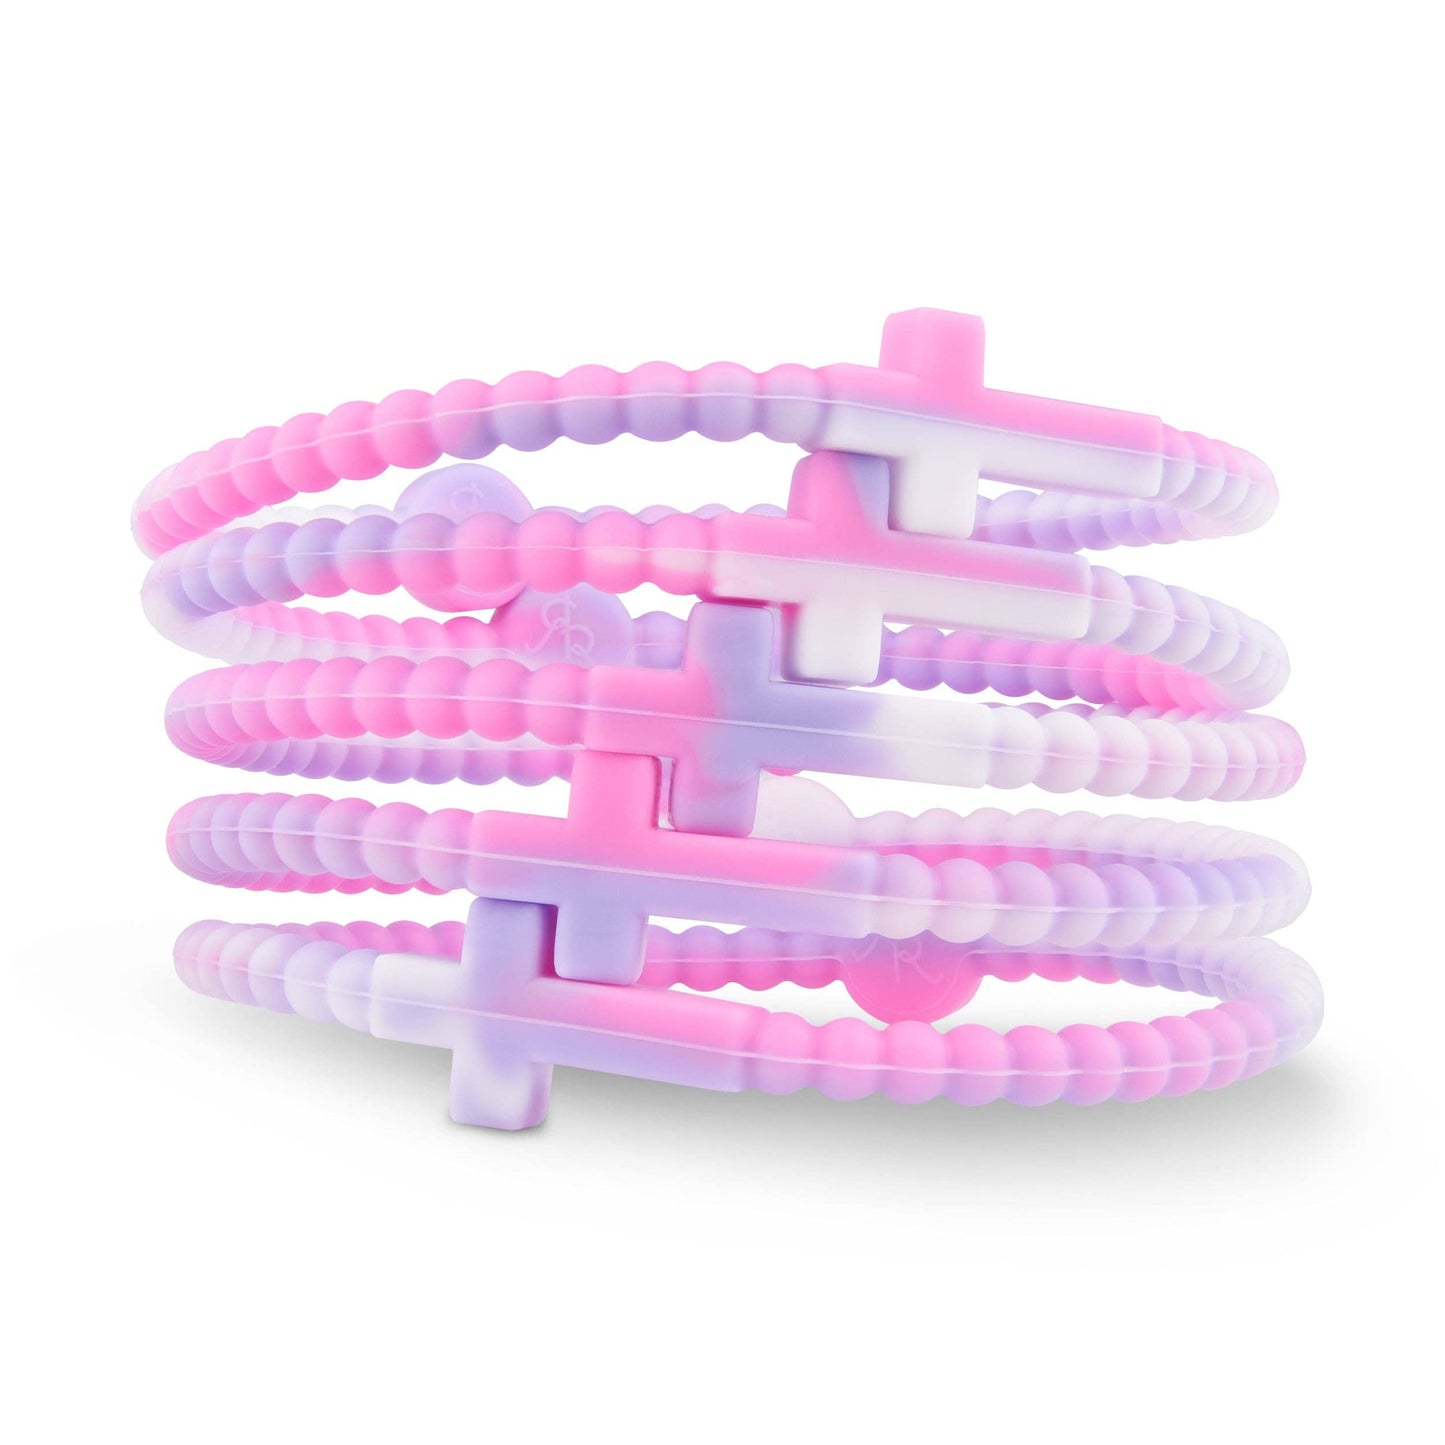 Jesus Bracelets (silicone cross bracelets) - Options Available